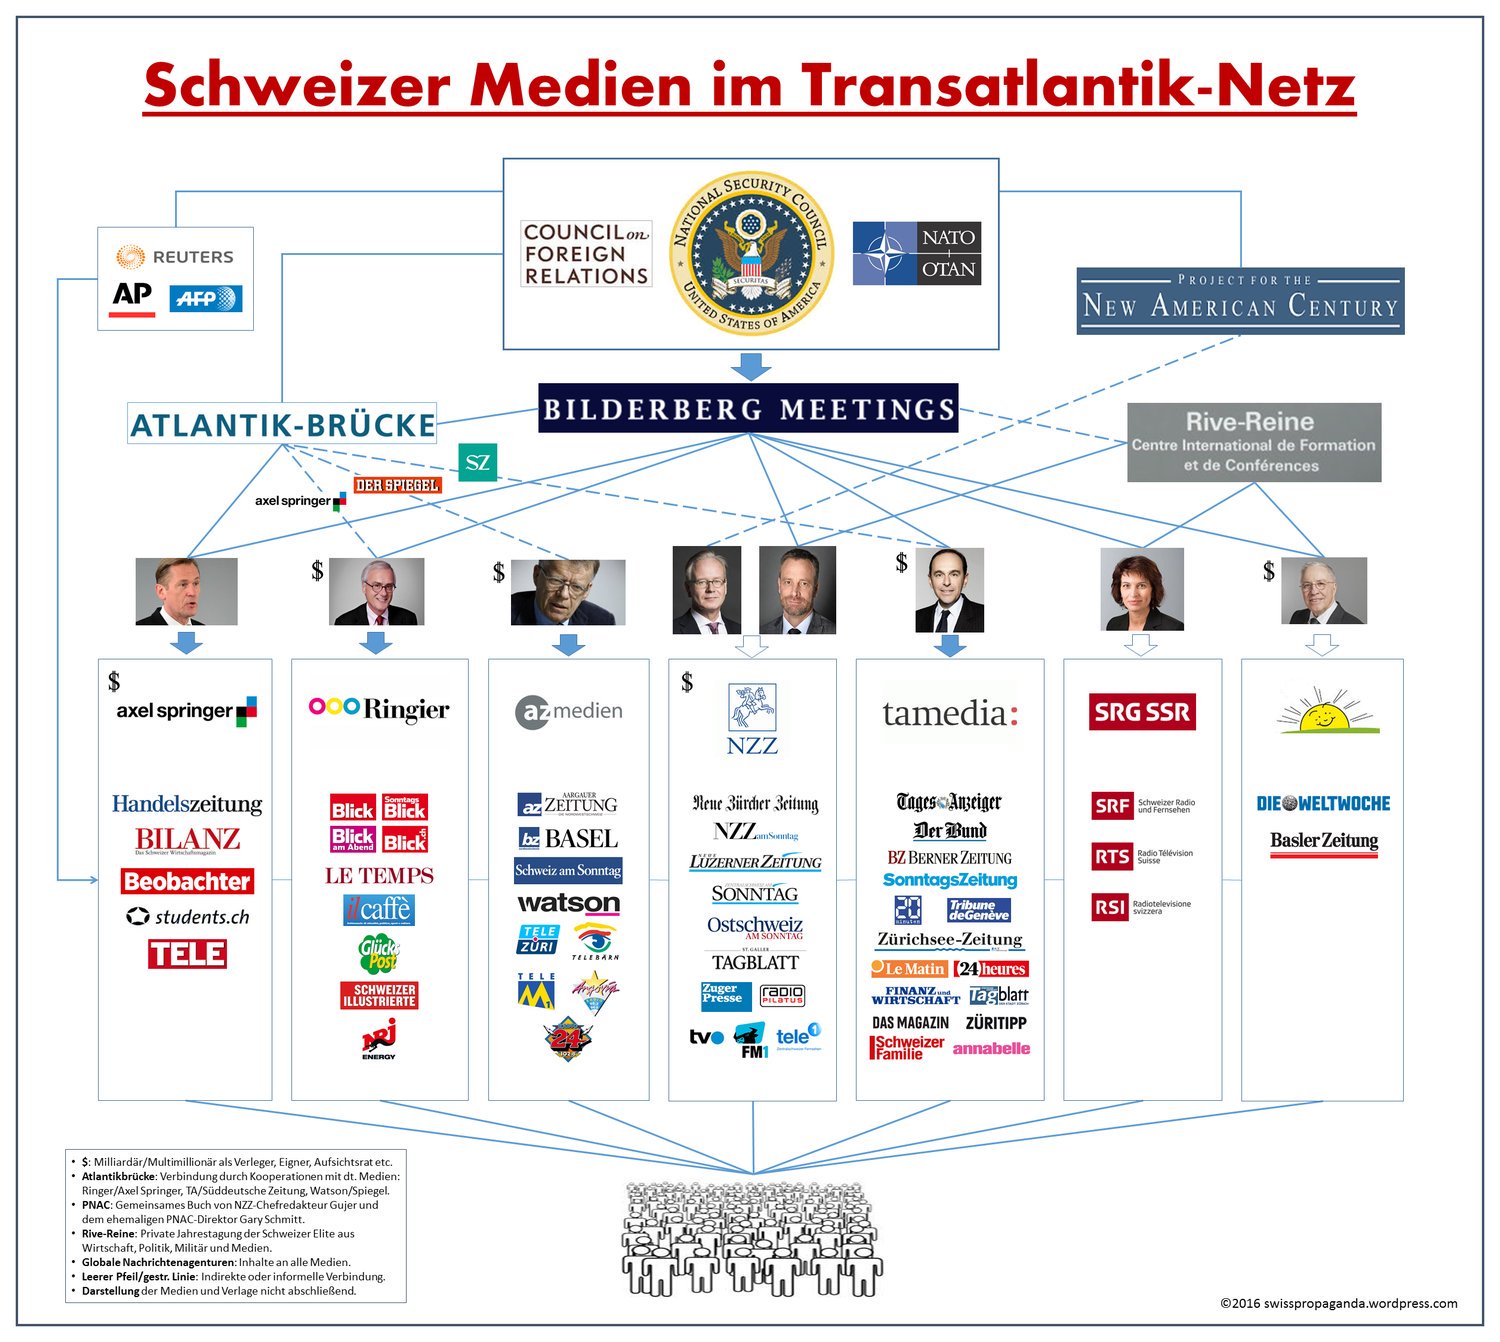 Schweizer Medien im Transatlantik-Netz